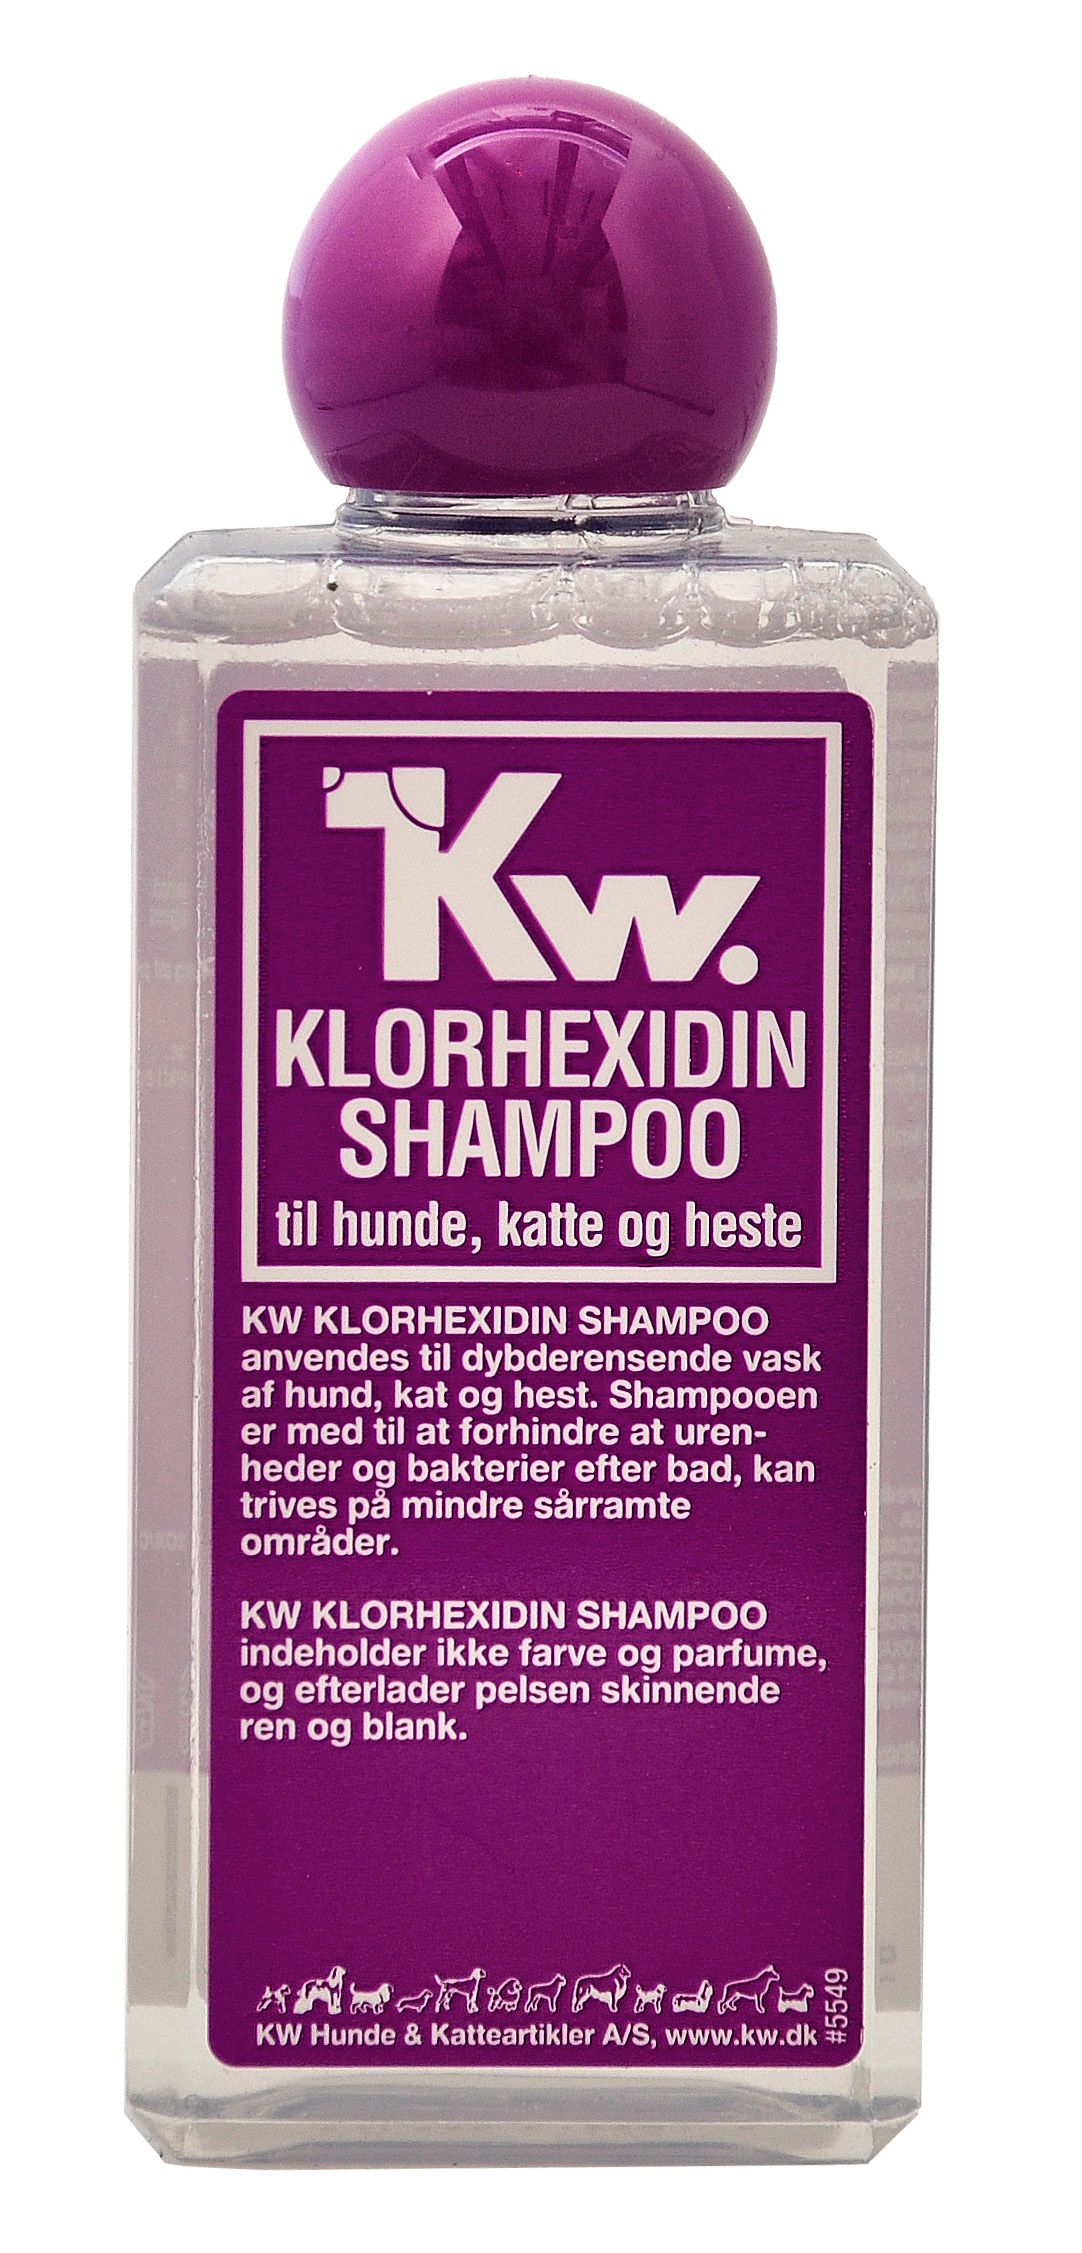 KW Klorhexidin Shampoo til dybderensende